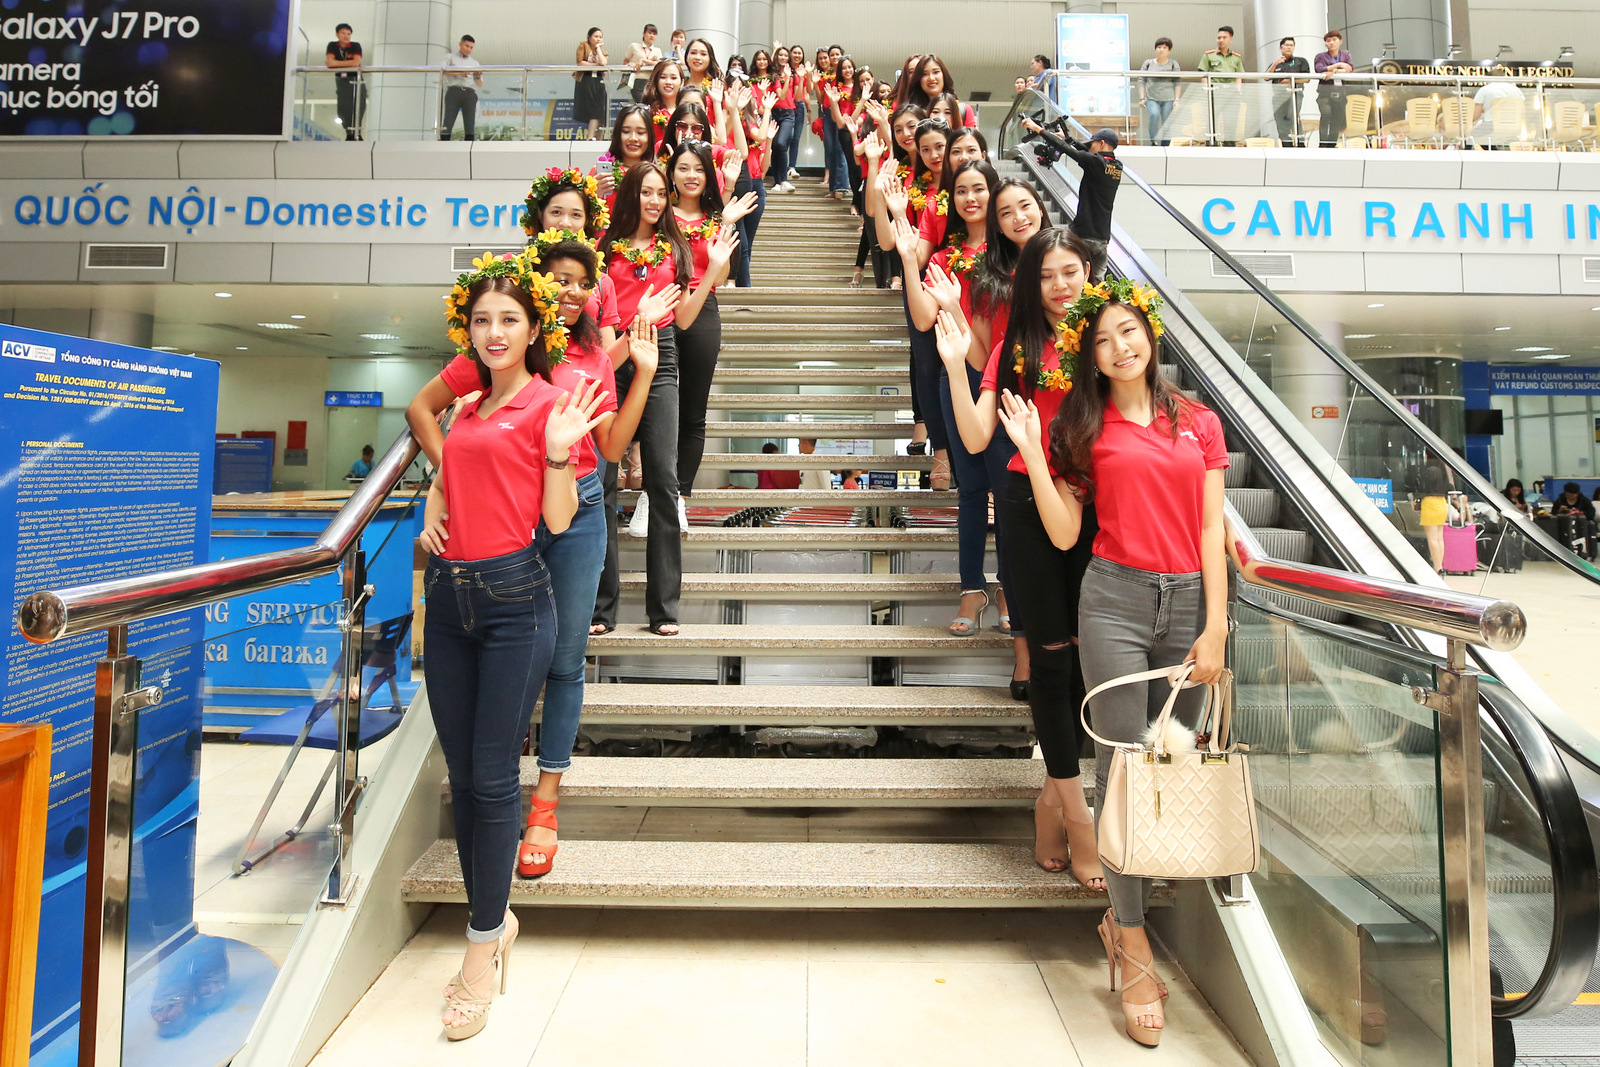 Các người đẹp tạo dáng ngay khi đáp xuống sân bay Cam Ranh (Khánh Hòa).